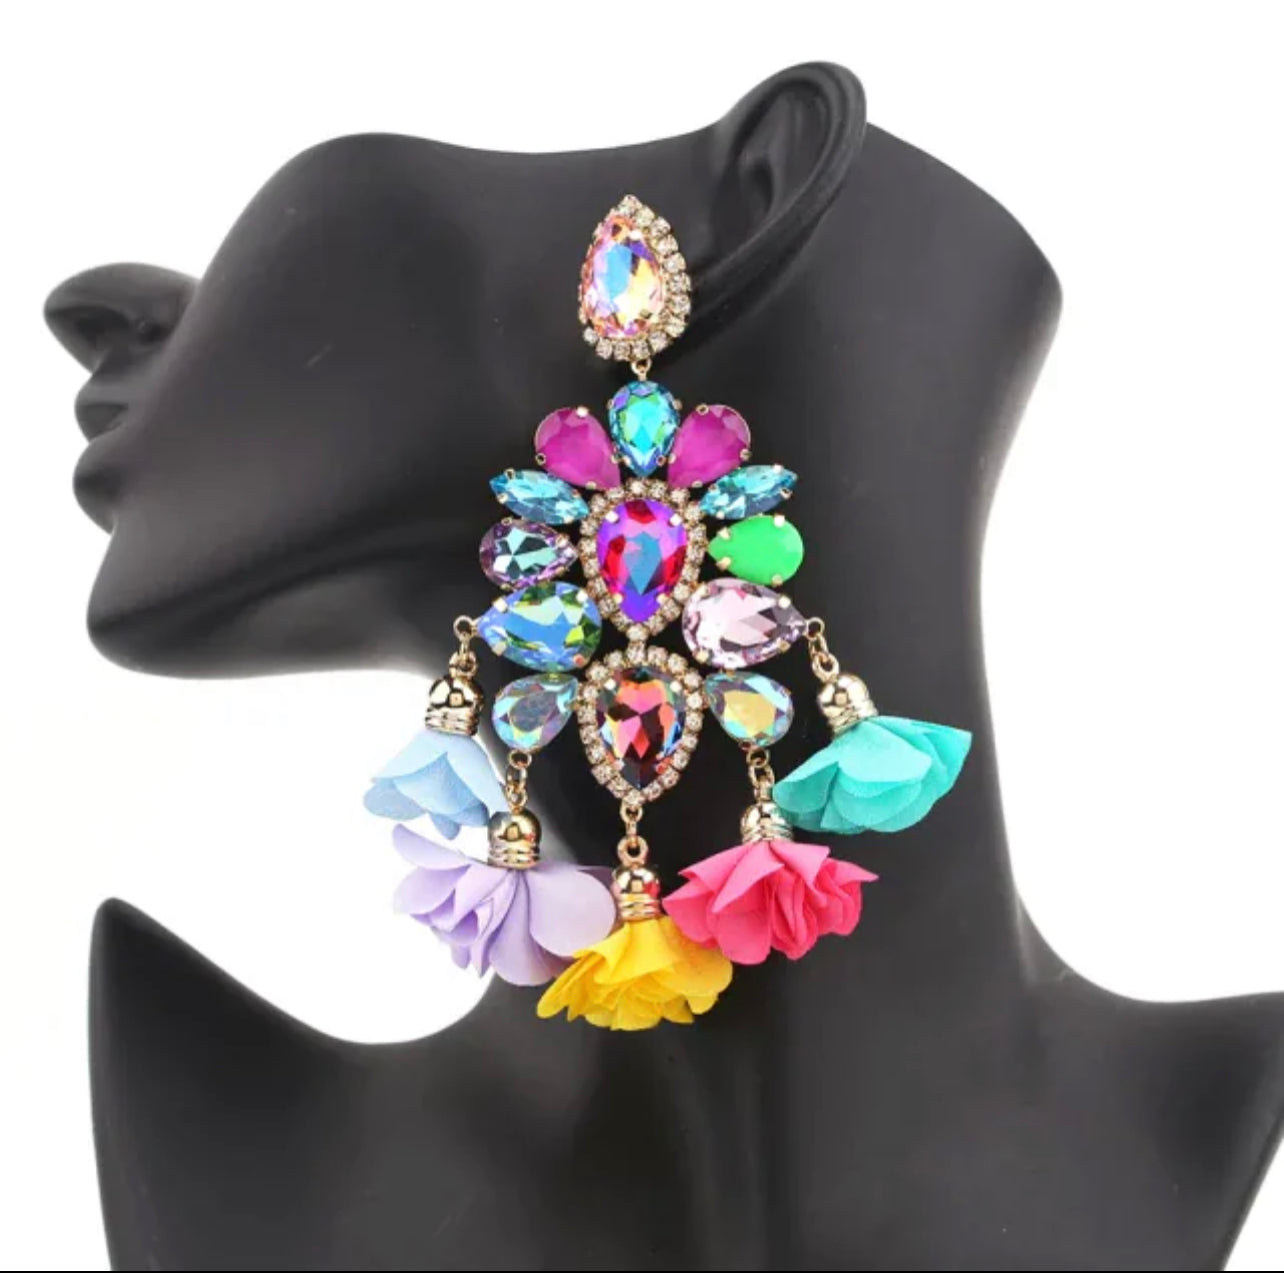 Revel Fleur earrings